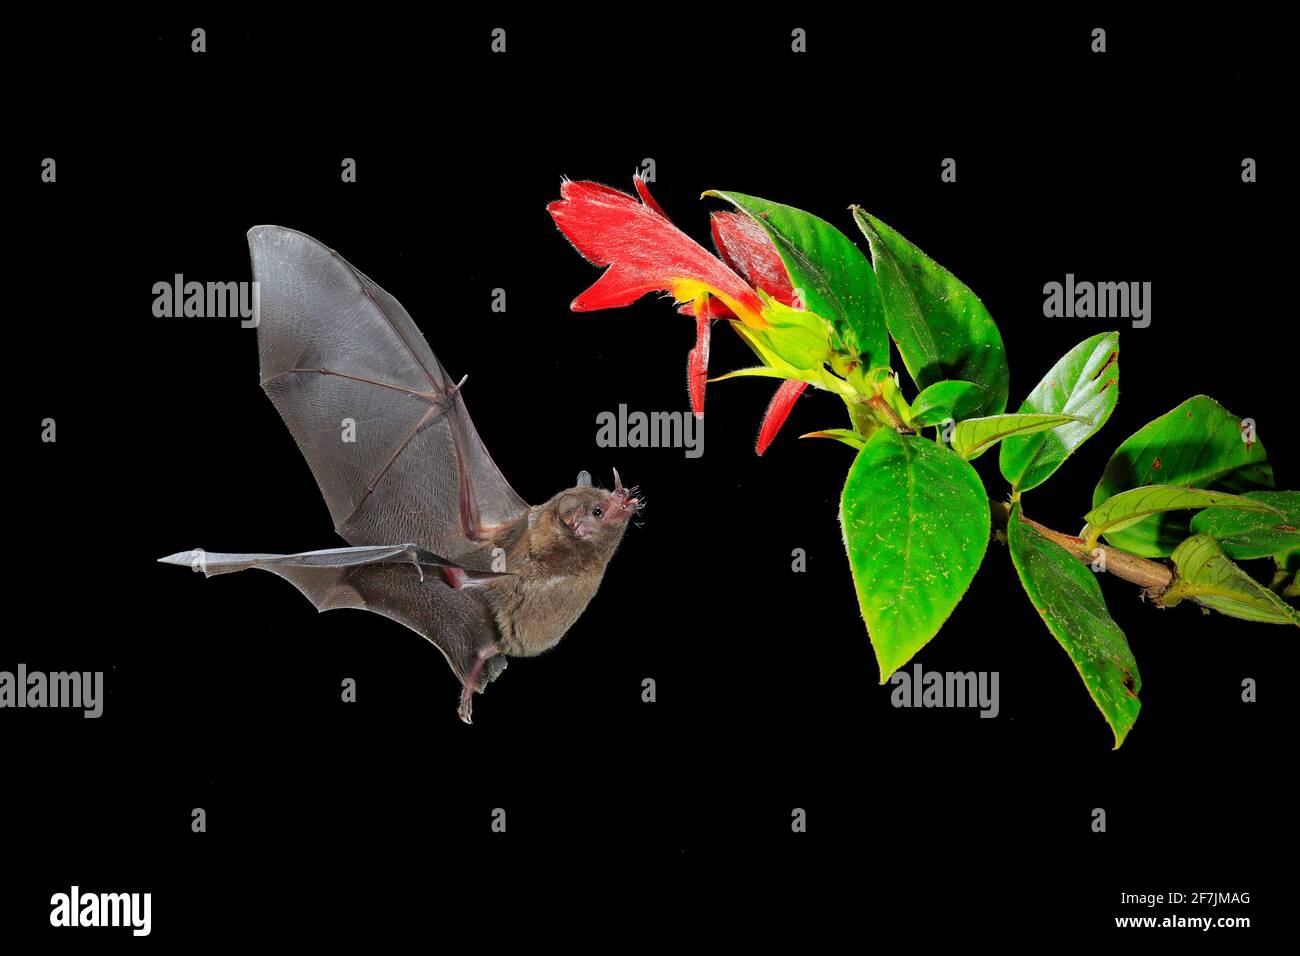 Nature nocturne, Bat long-tongued de Pallas, Glossophaga soricina, chauve-souris volante dans la nuit sombre. Animal nocturne en vol avec fleur rouge. Loi sur la faune Banque D'Images